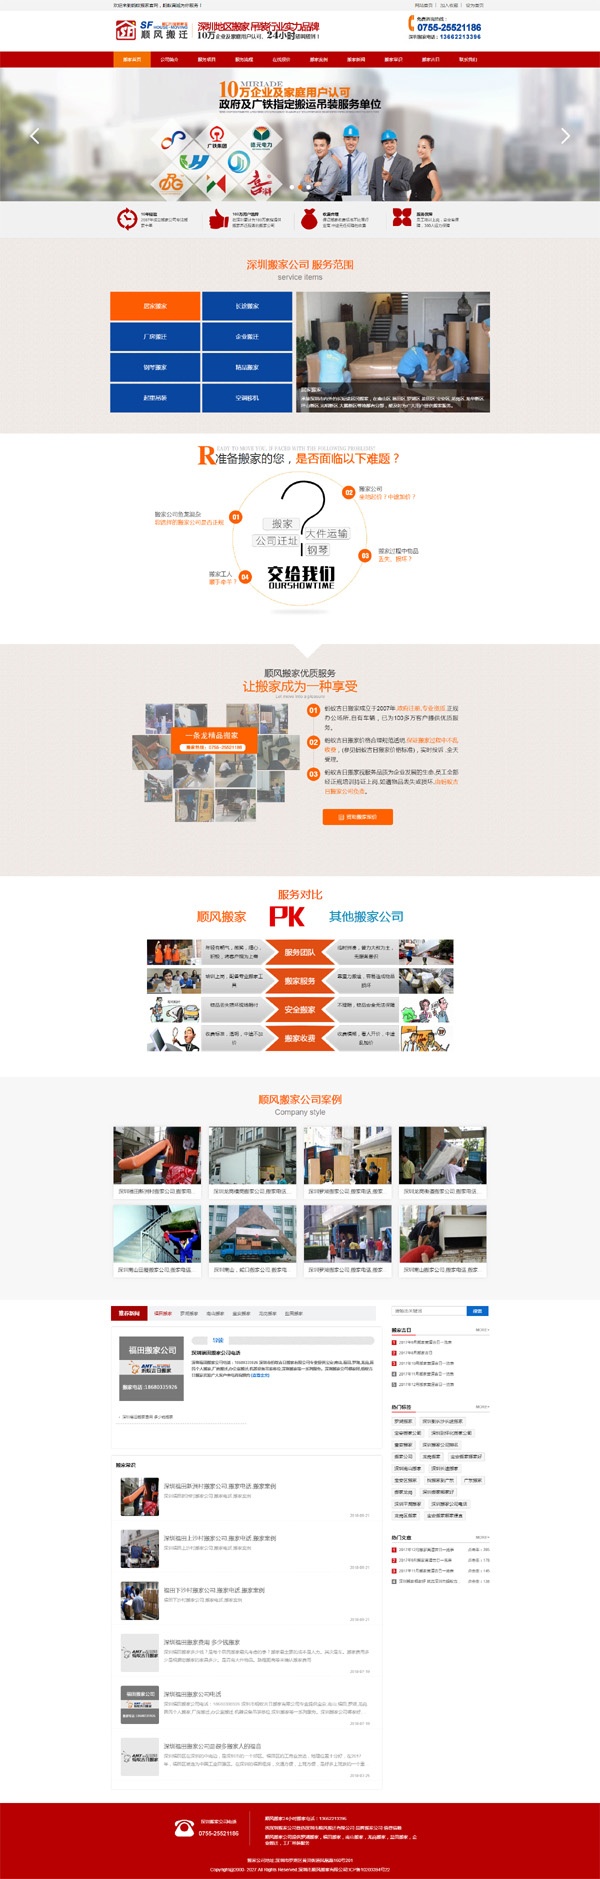 搬家公司网站案例-偏平化－响应式－搬家公司品牌网站设计案例-深圳市顺风搬家公司网站案例